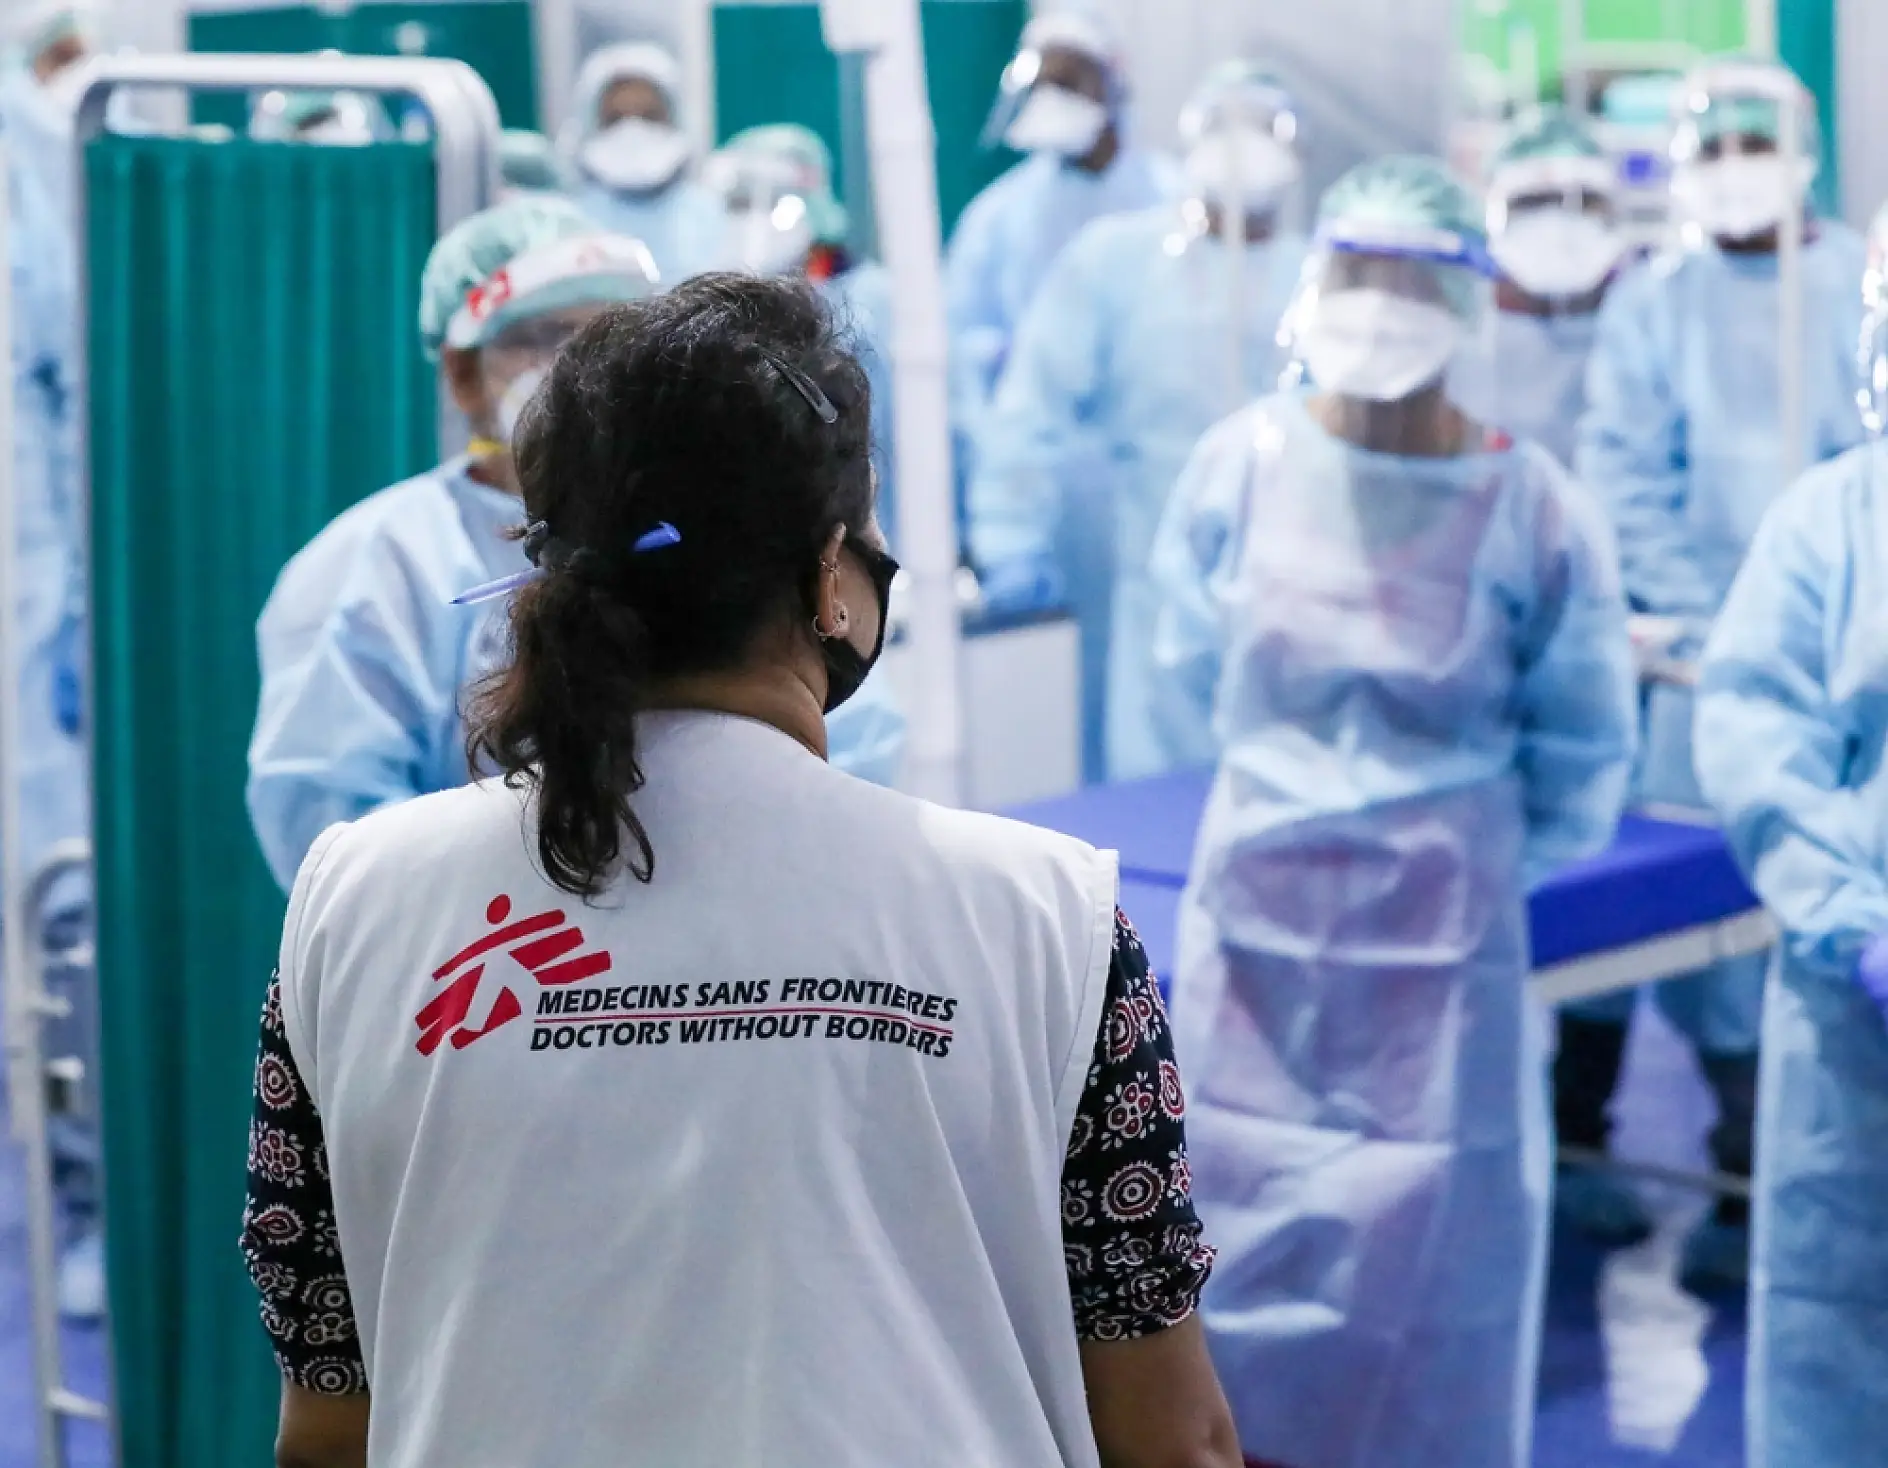 MSF（国境なき医師団）が特に優先していることは、医療従事者の安全です。だからこそスタッフ全員が安全・危機管理の面で厳格な手順を守る必要があります